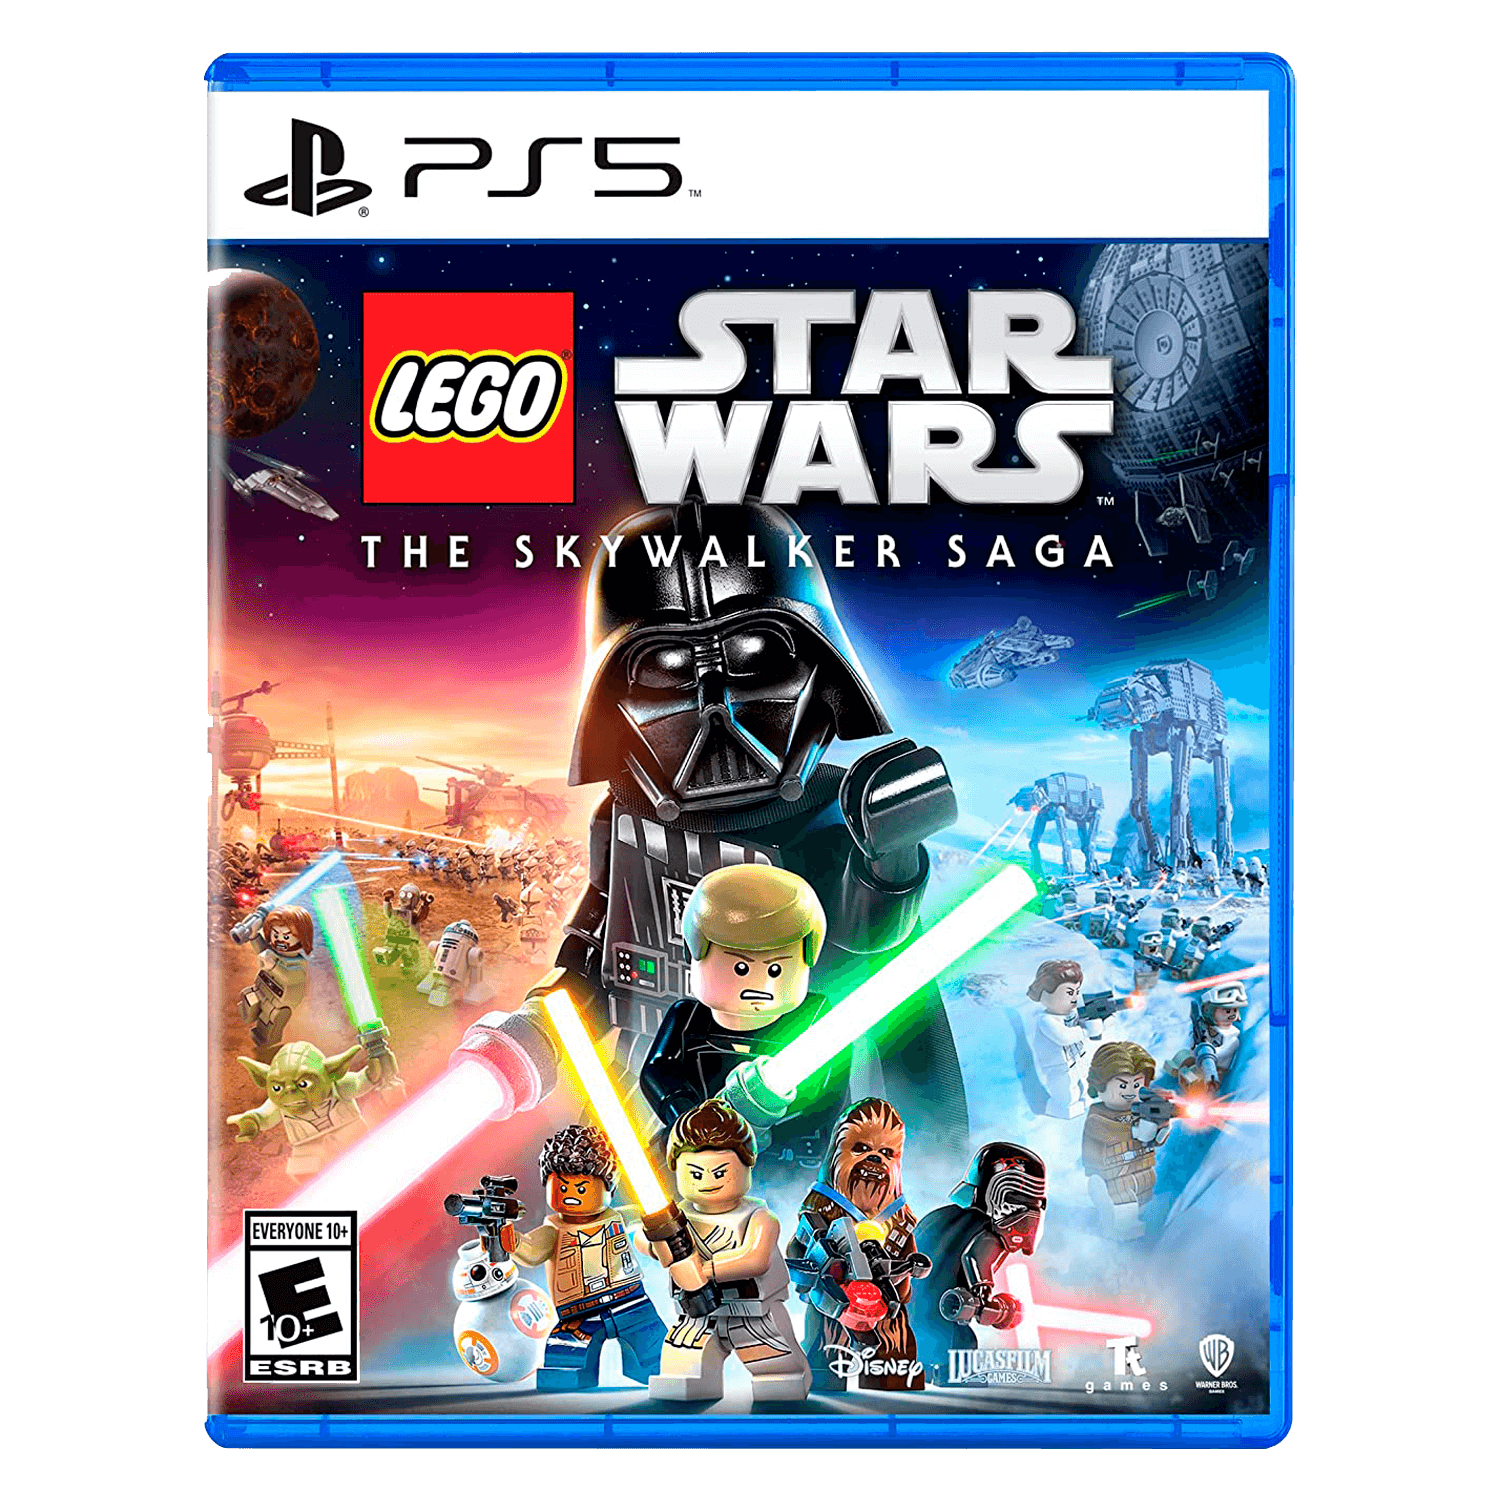 Lego Star Wars A Saga Skywalker Deluxe Edition Ps5 (Novo) (Jogo